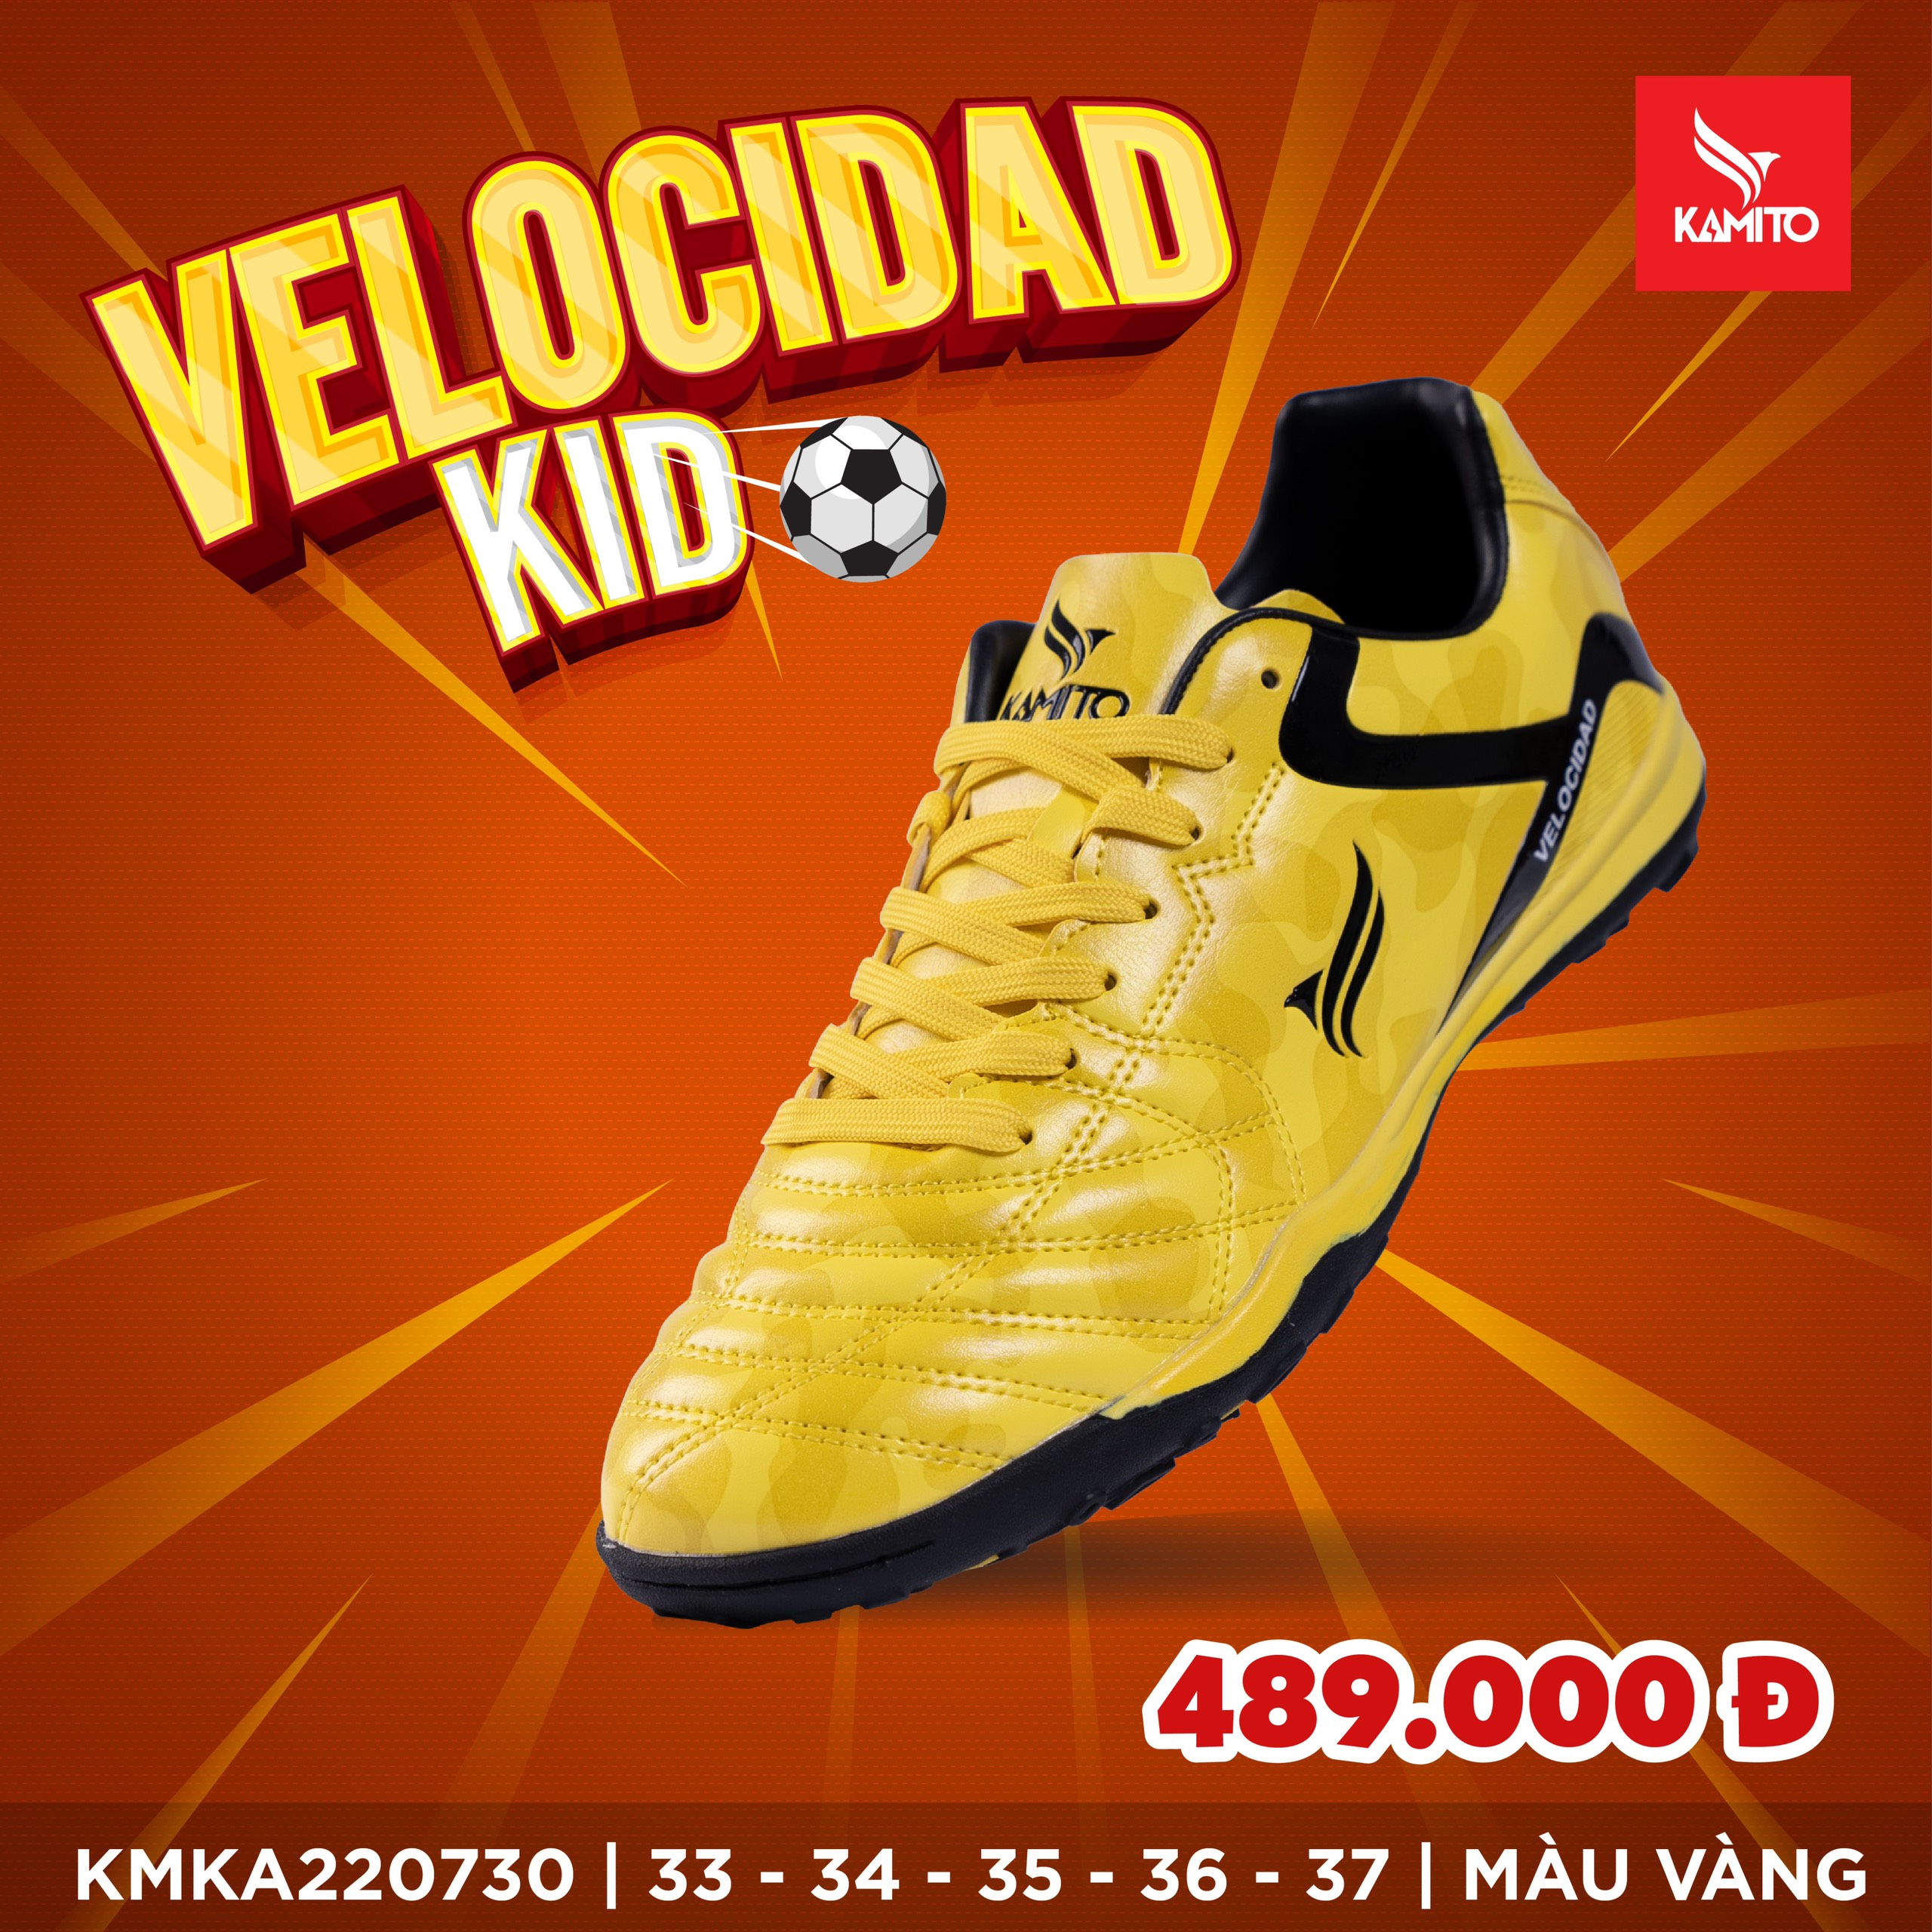 Giày Bóng đá trẻ em Kamito Velocidad Lengend-TF Kid Vàng